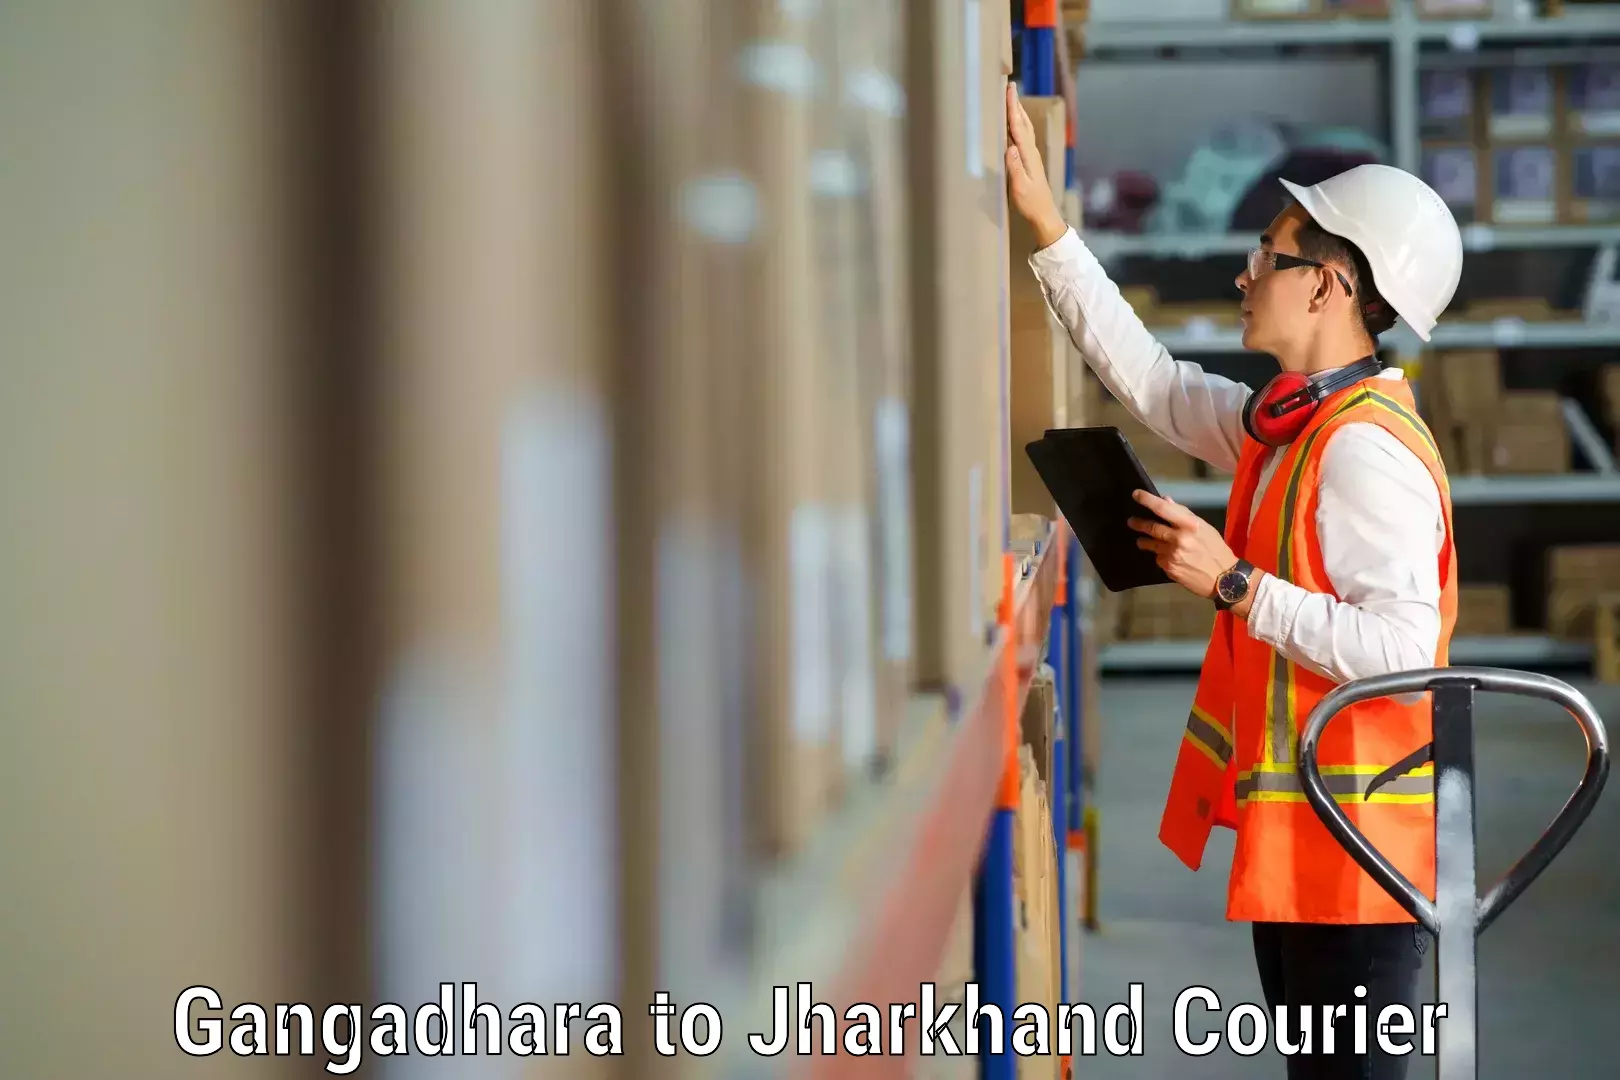 Reliable moving assistance Gangadhara to Lohardaga